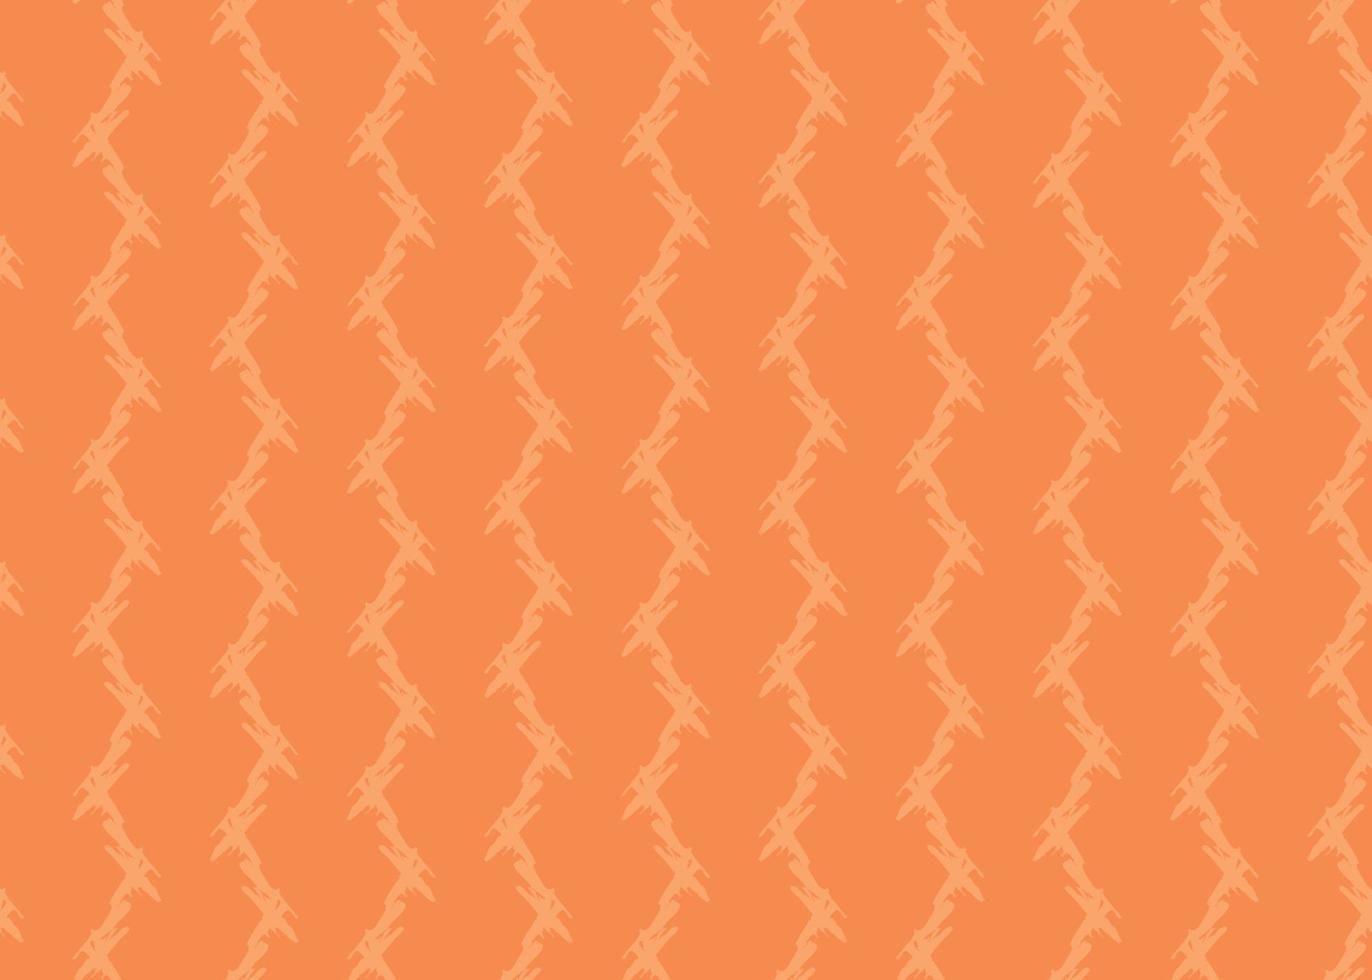 Vektor Textur Hintergrund, nahtloses Muster. handgezeichnet, orange Farben.